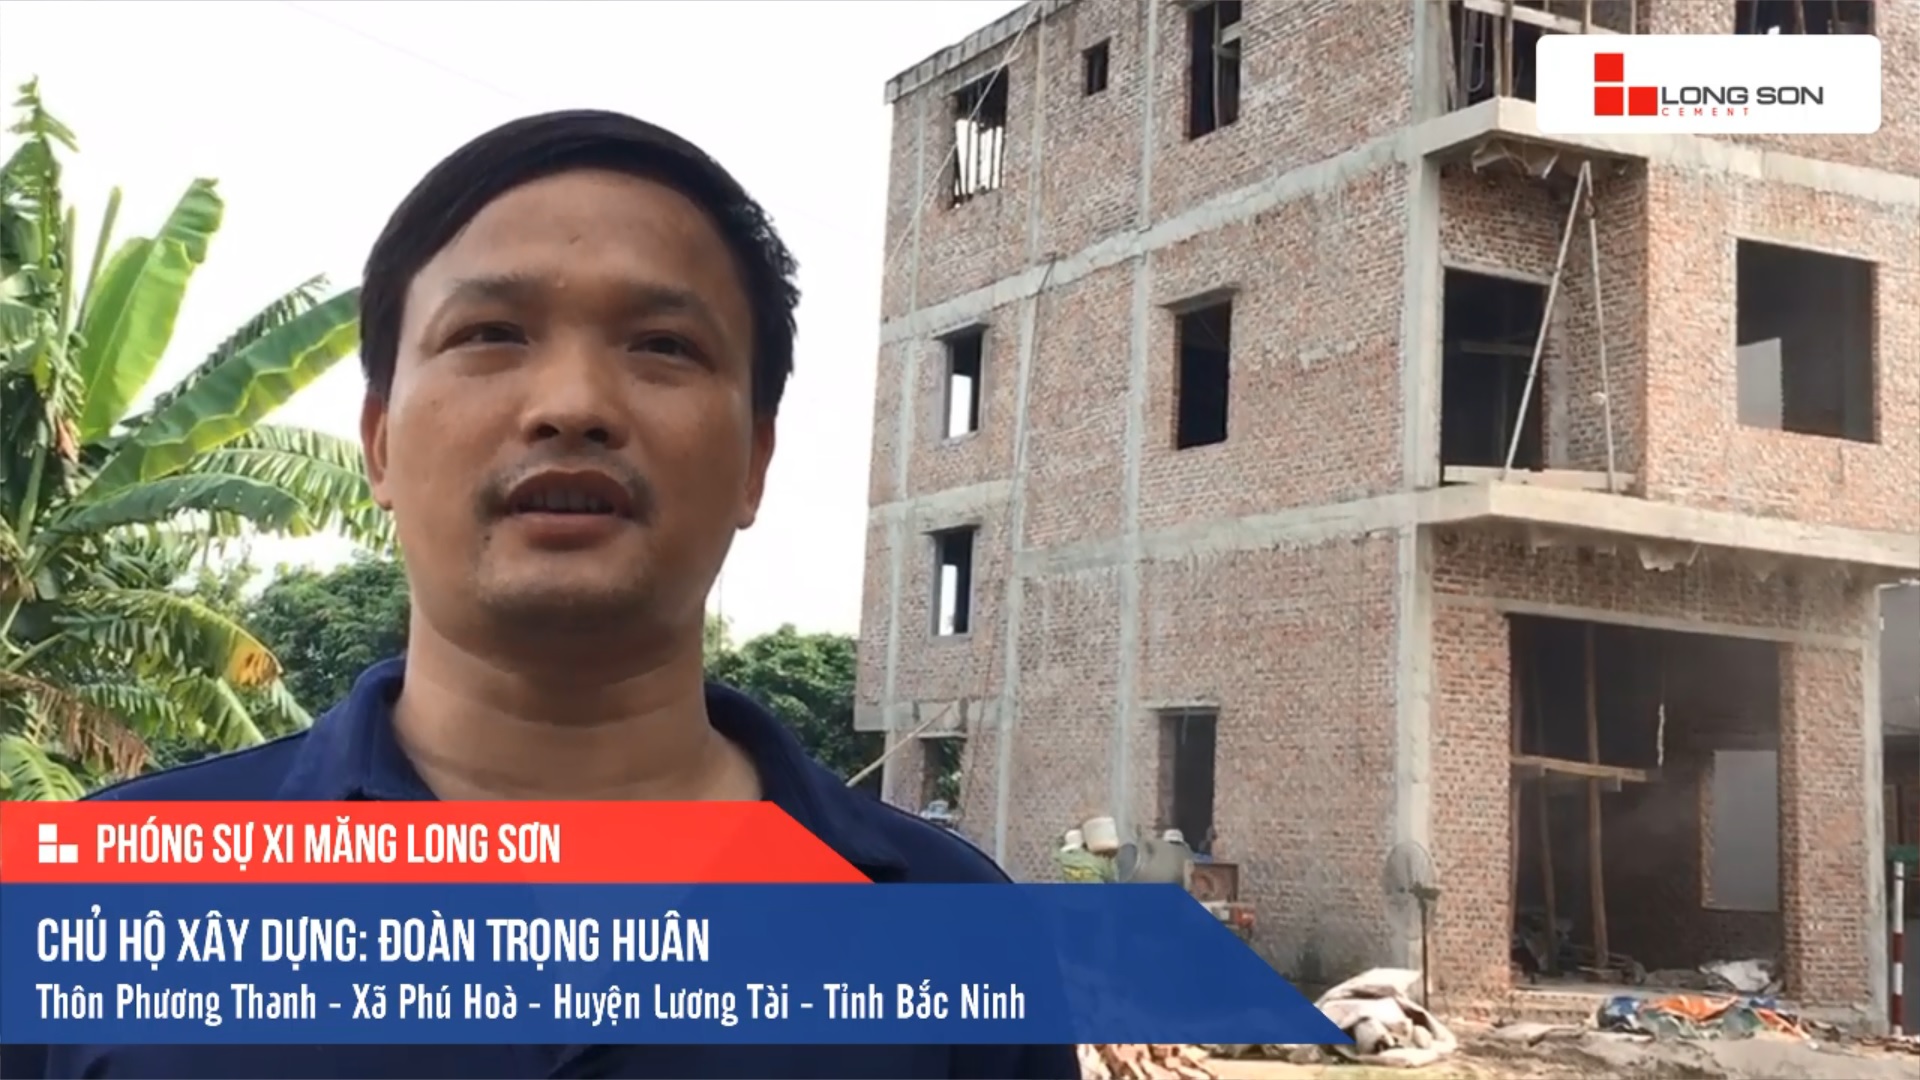 Phóng sự công trình sử dụng Xi măng Long Sơn tại Bắc Ninh 21.08.2019